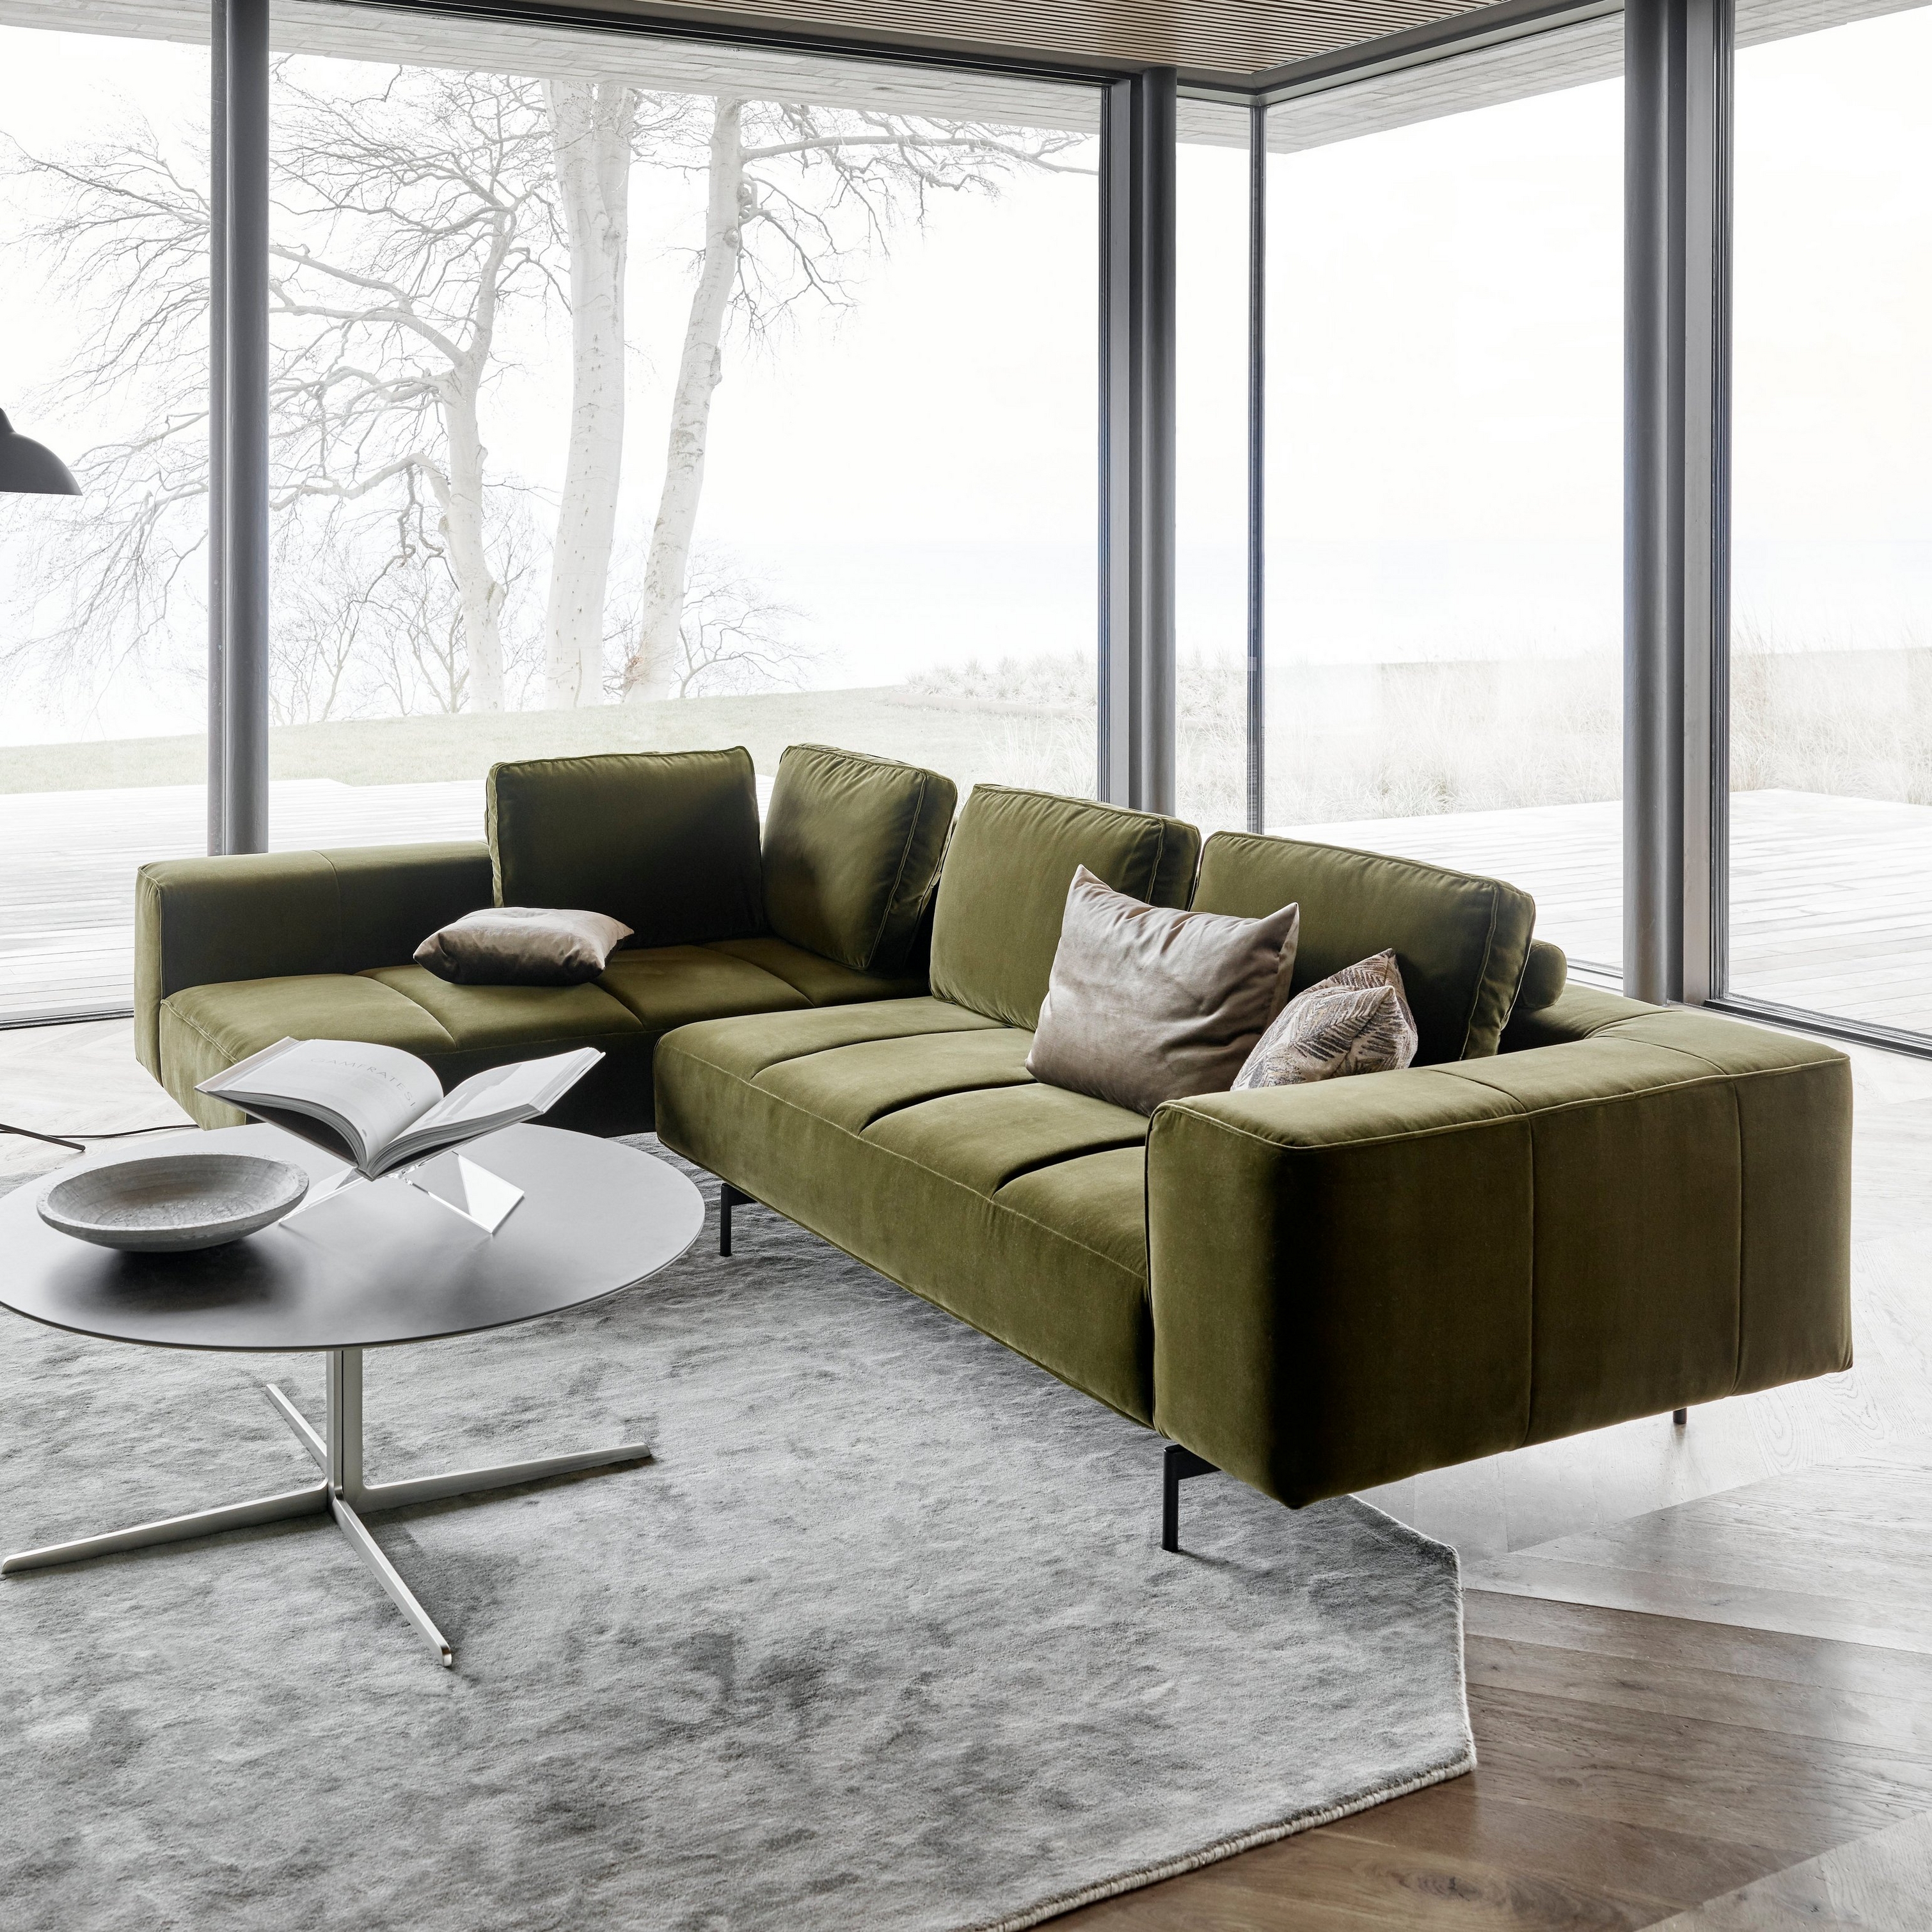 Modern grön Amsterdam soffa, soffbord, golvlampa som står vid ett panoramafönster med vattenutsikt.